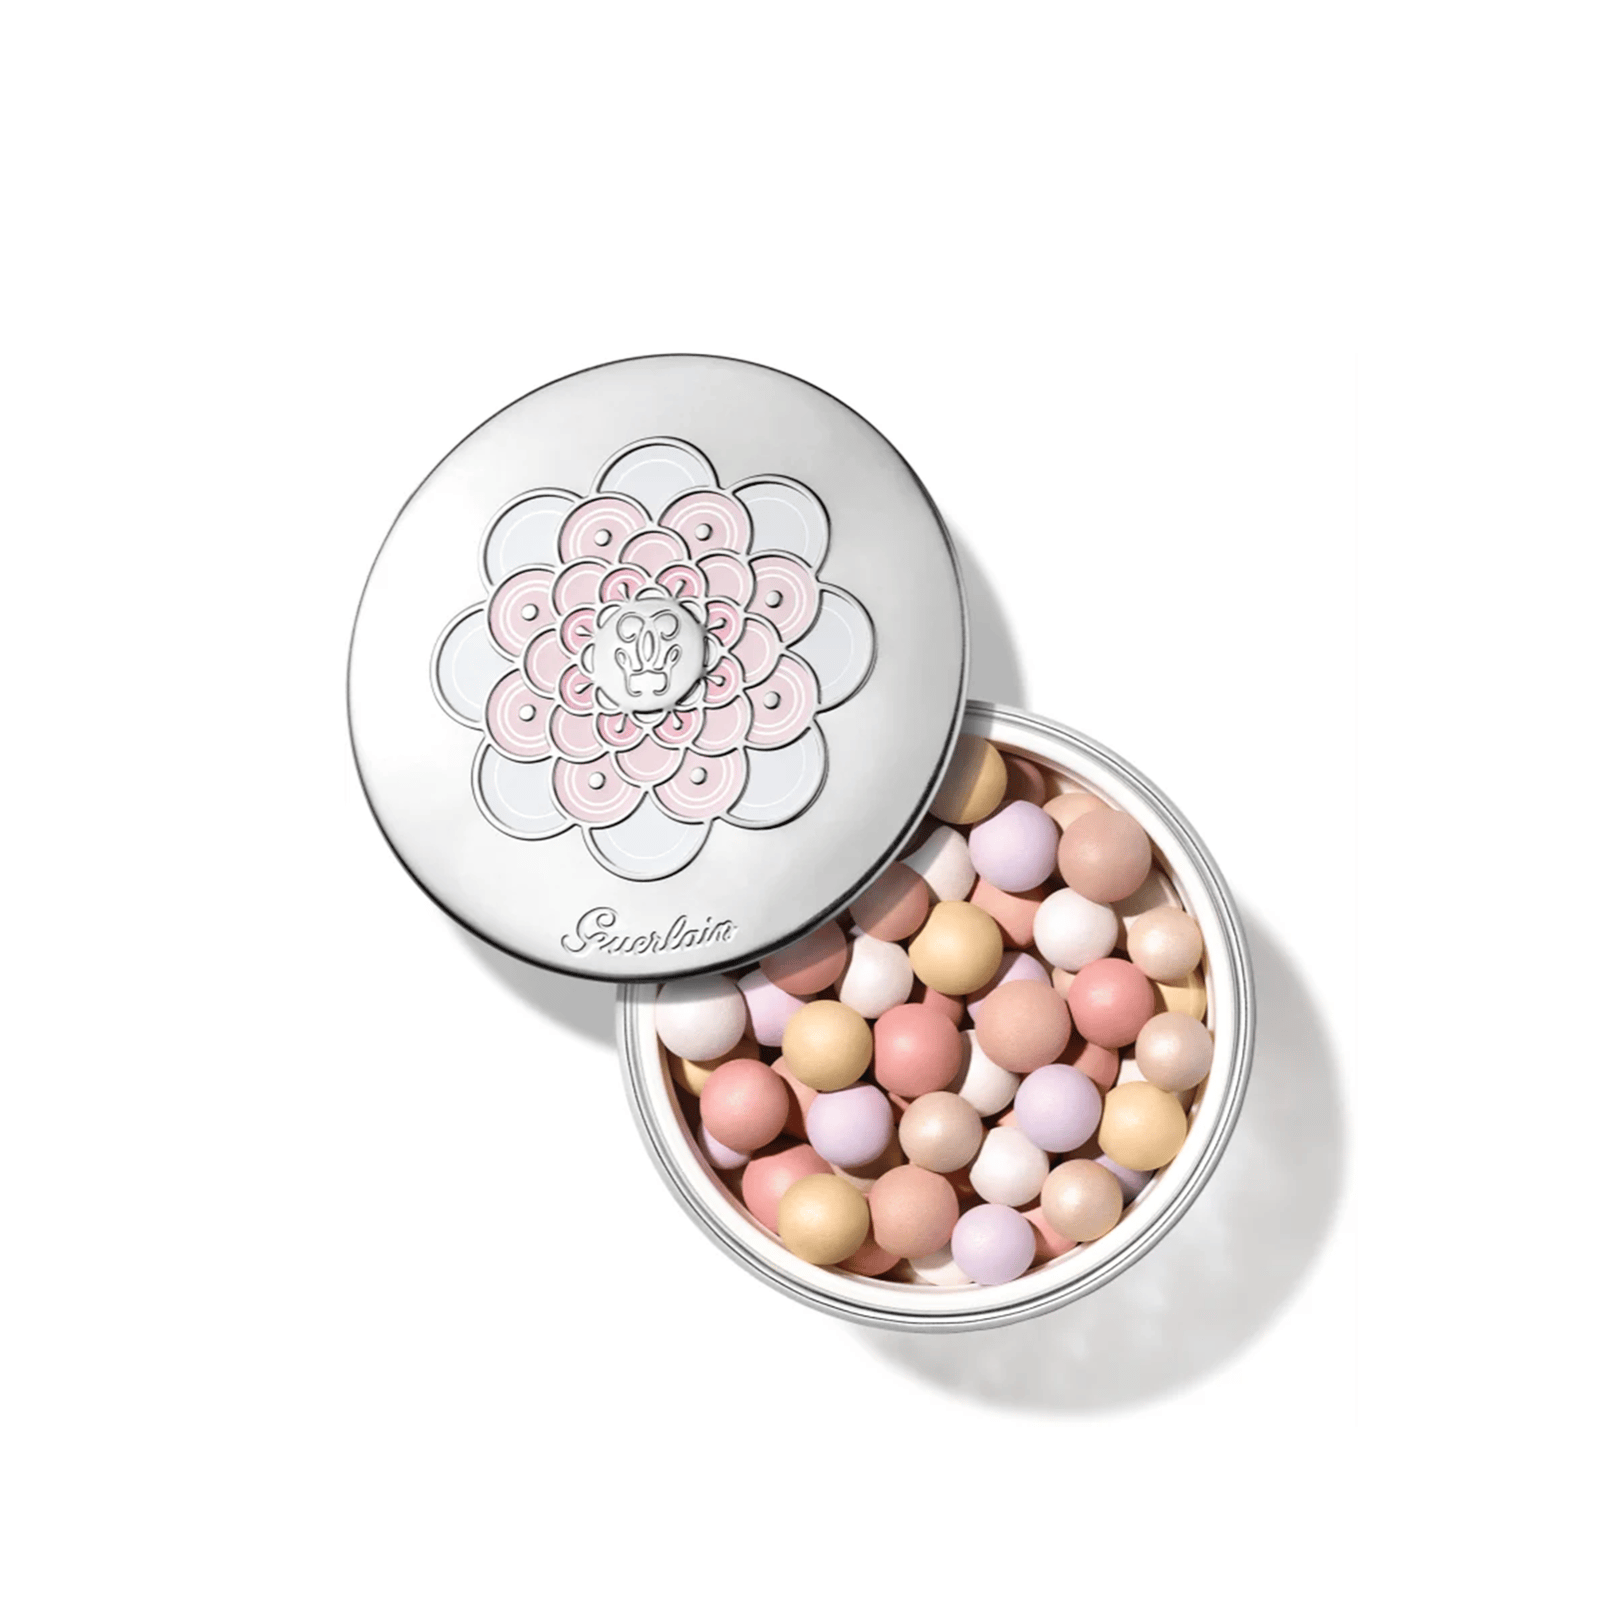 Guerlain Météorites Light-Revealing Pearls Of Powder 3 Medium 25g (0.8oz)